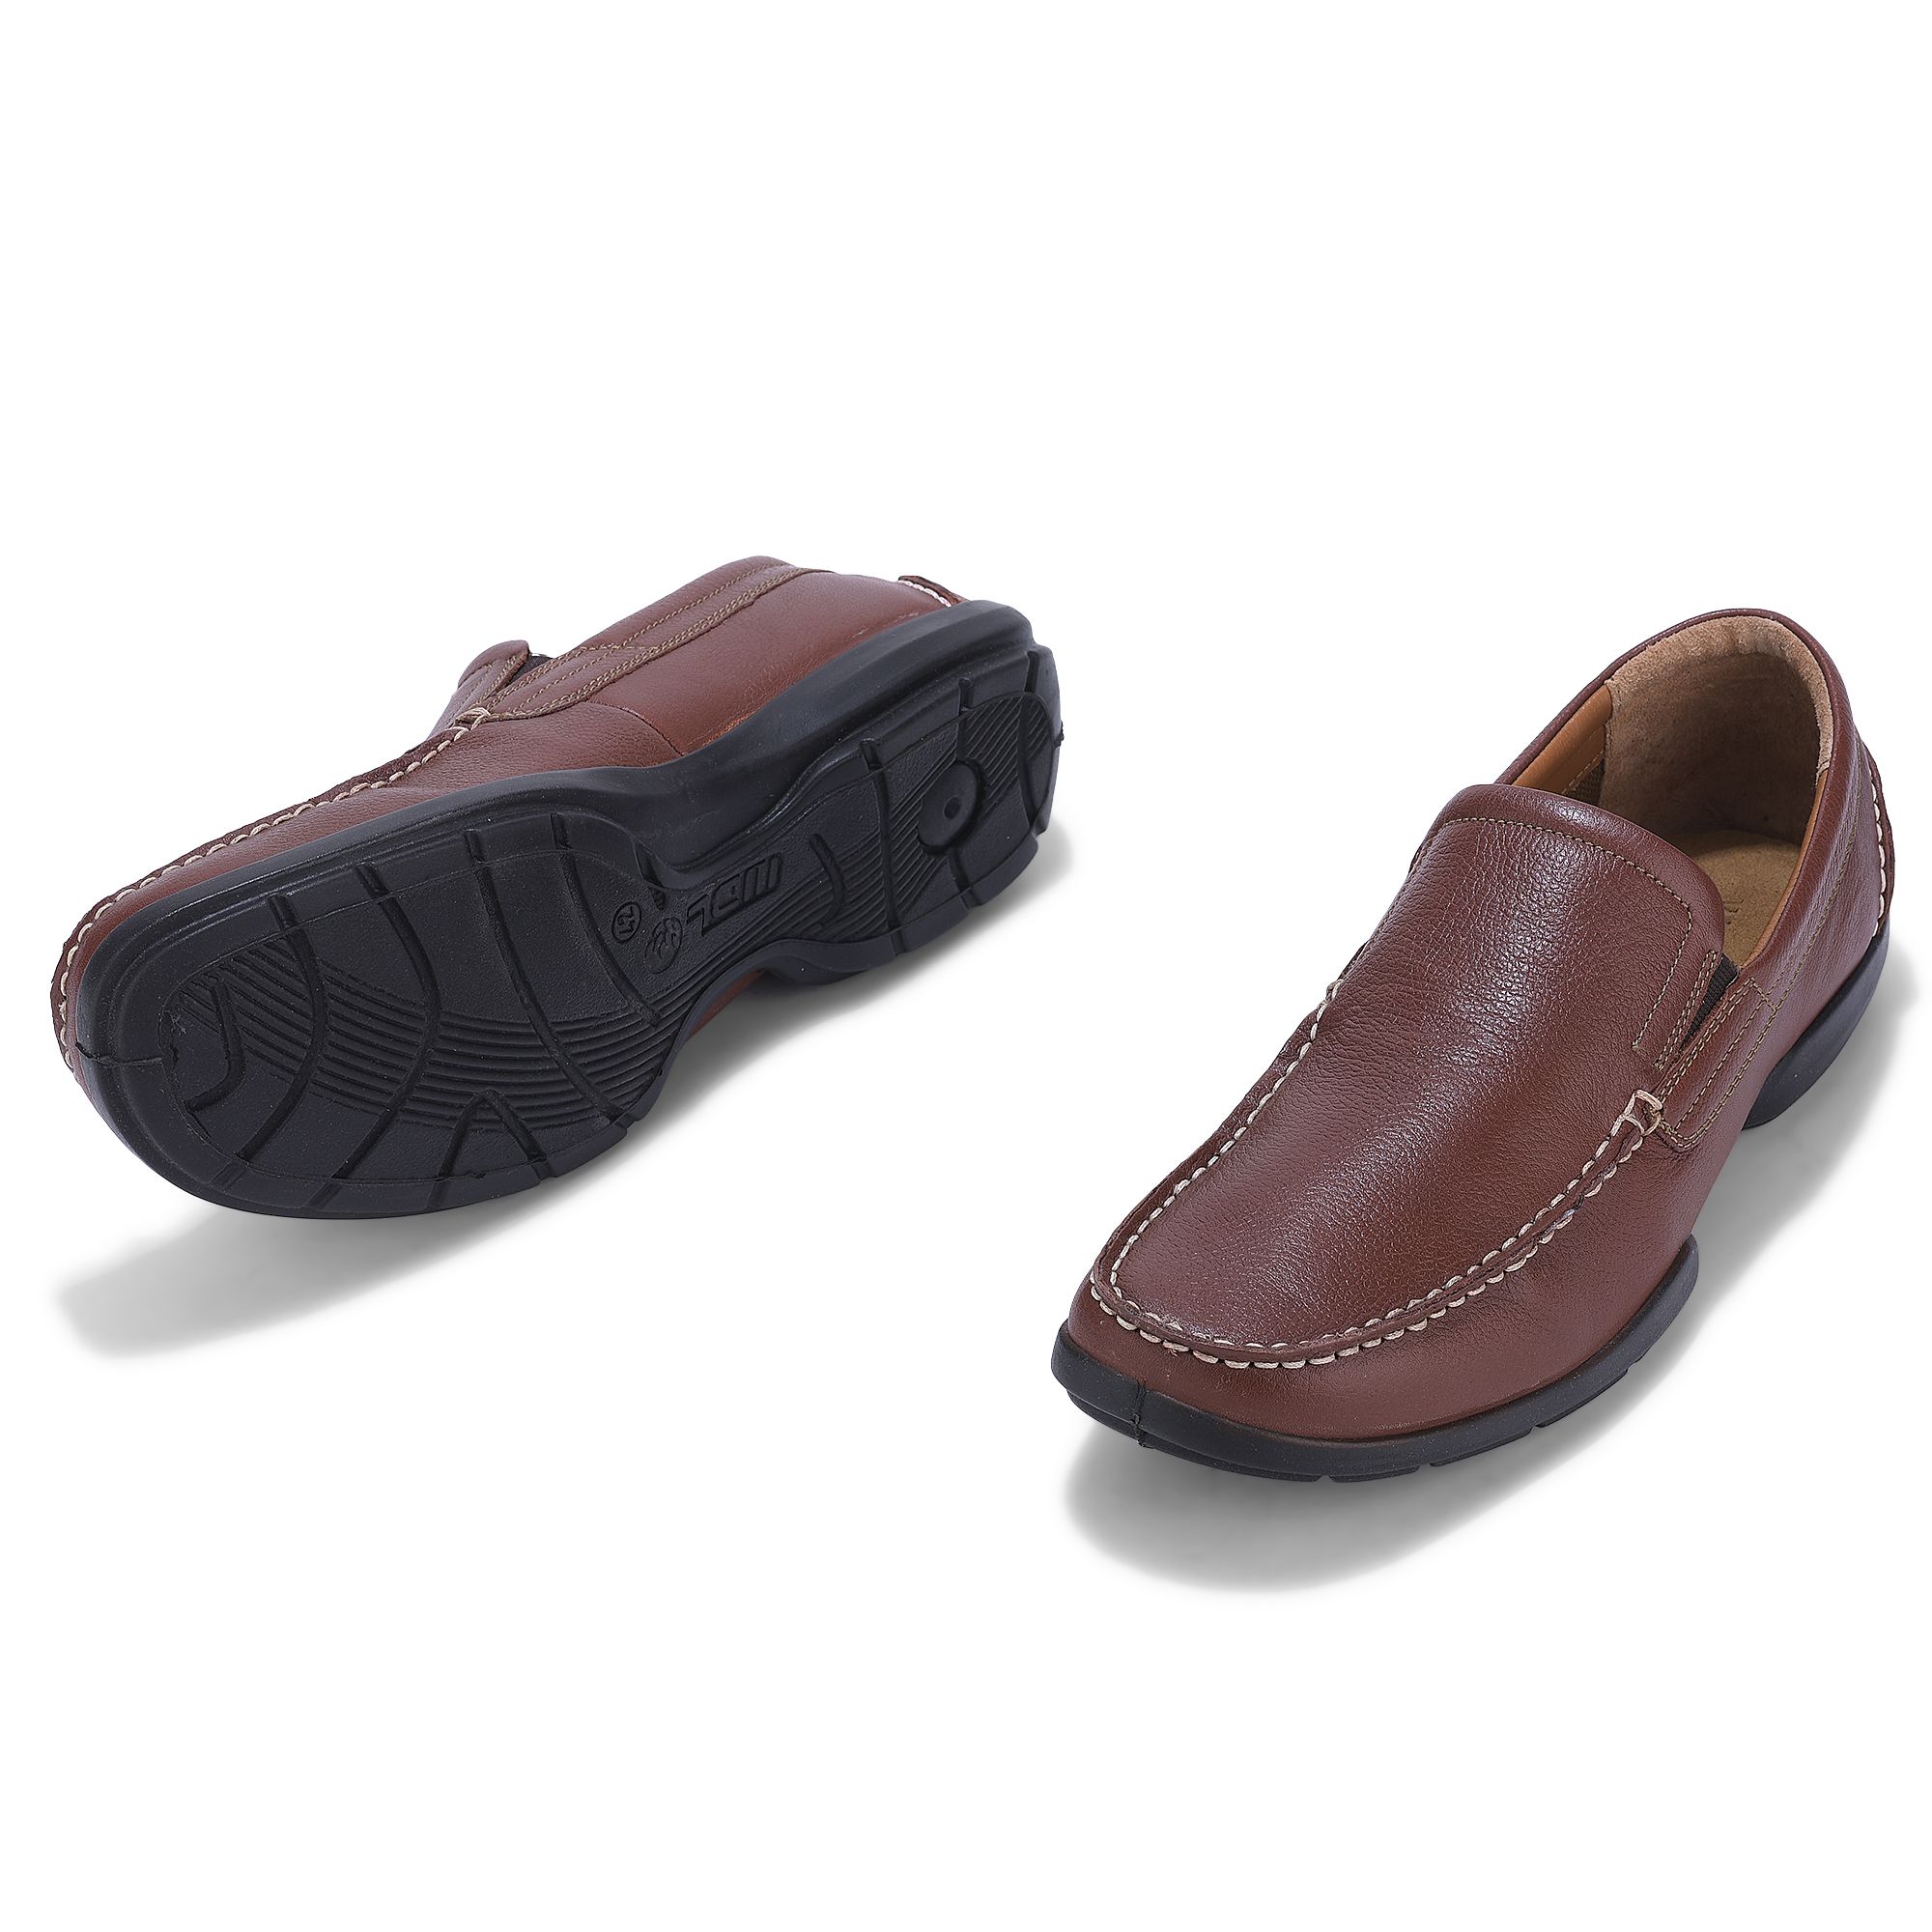 Woodland Slip-On Shoes For Men